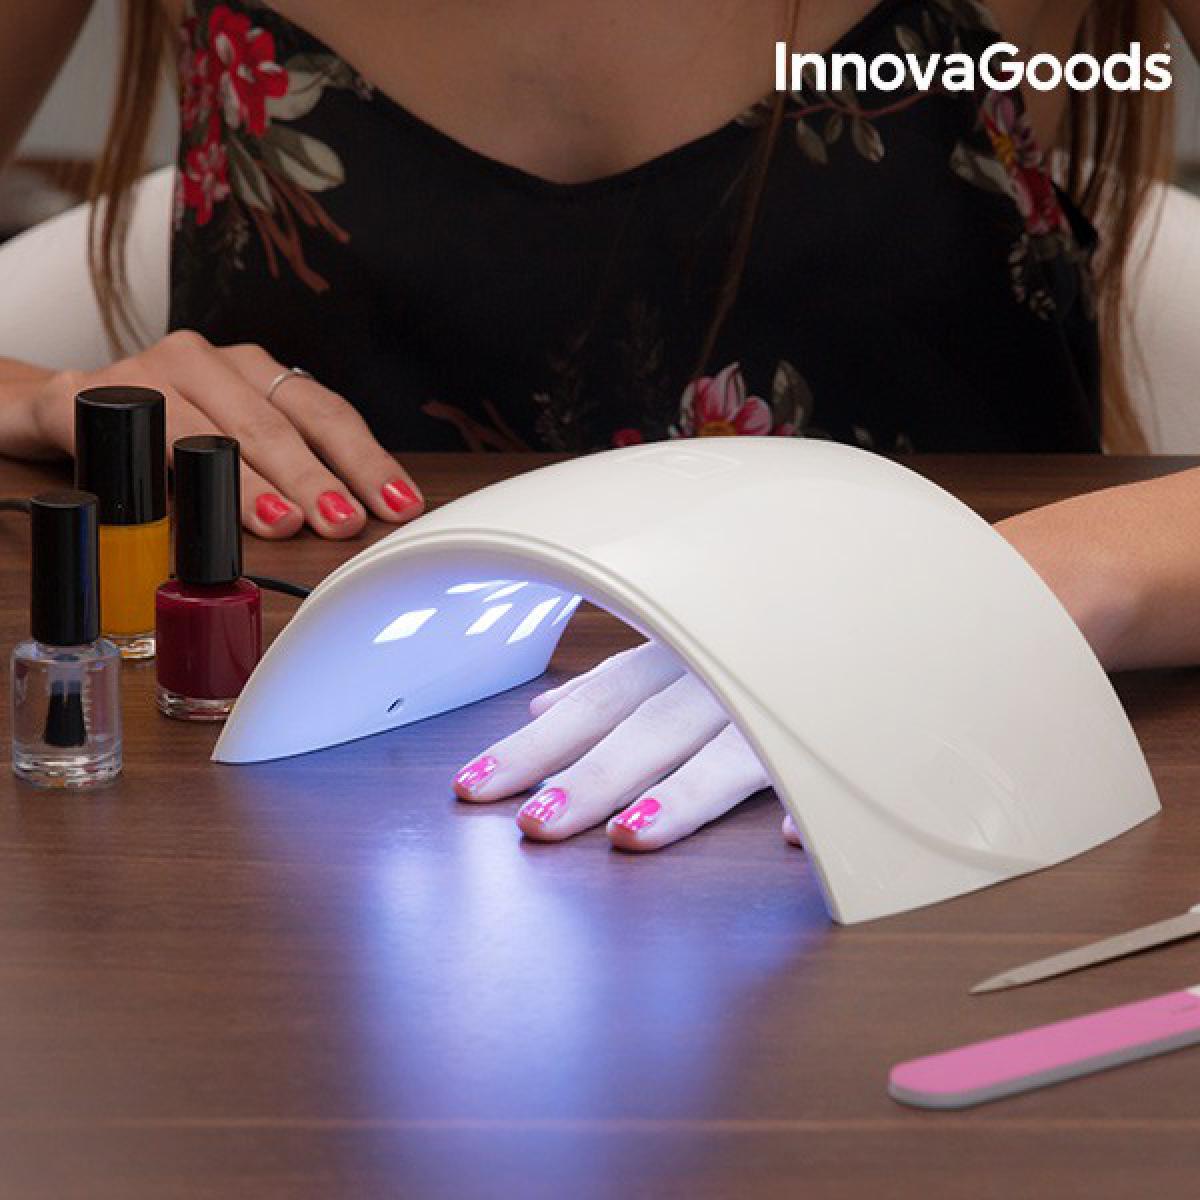 Totalcadeau - Lampe LED UV professionnelle pour ongles avec capteur de présence - Accessoire manucure sechage des ongles Pas cher - Objets déco